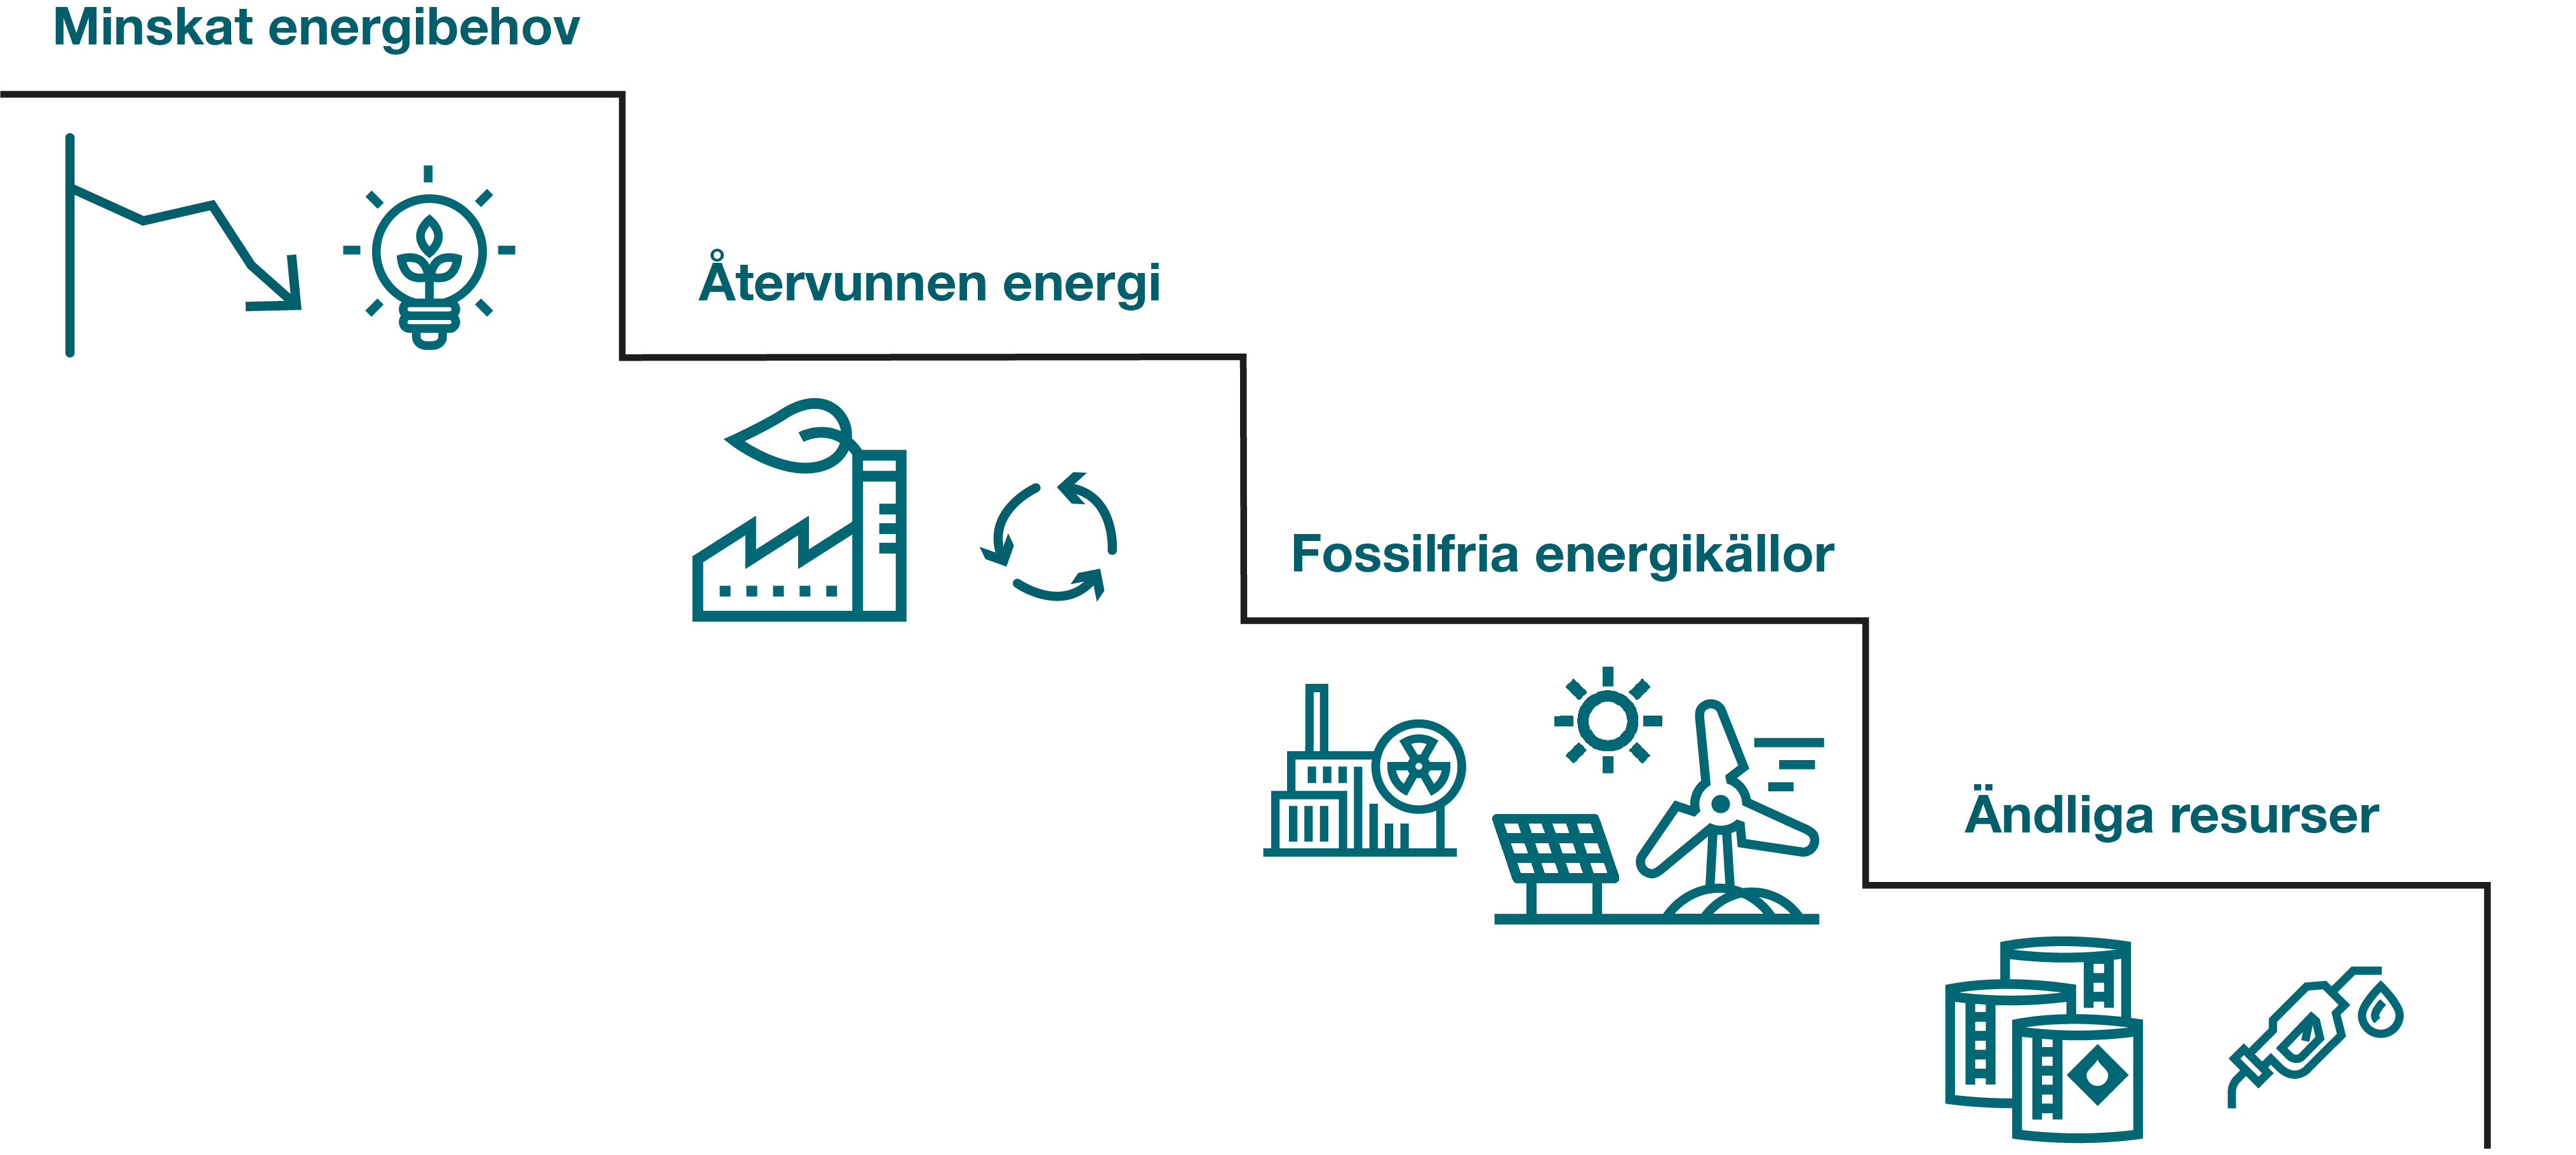 Illustrationen visar principerna i energitrappan